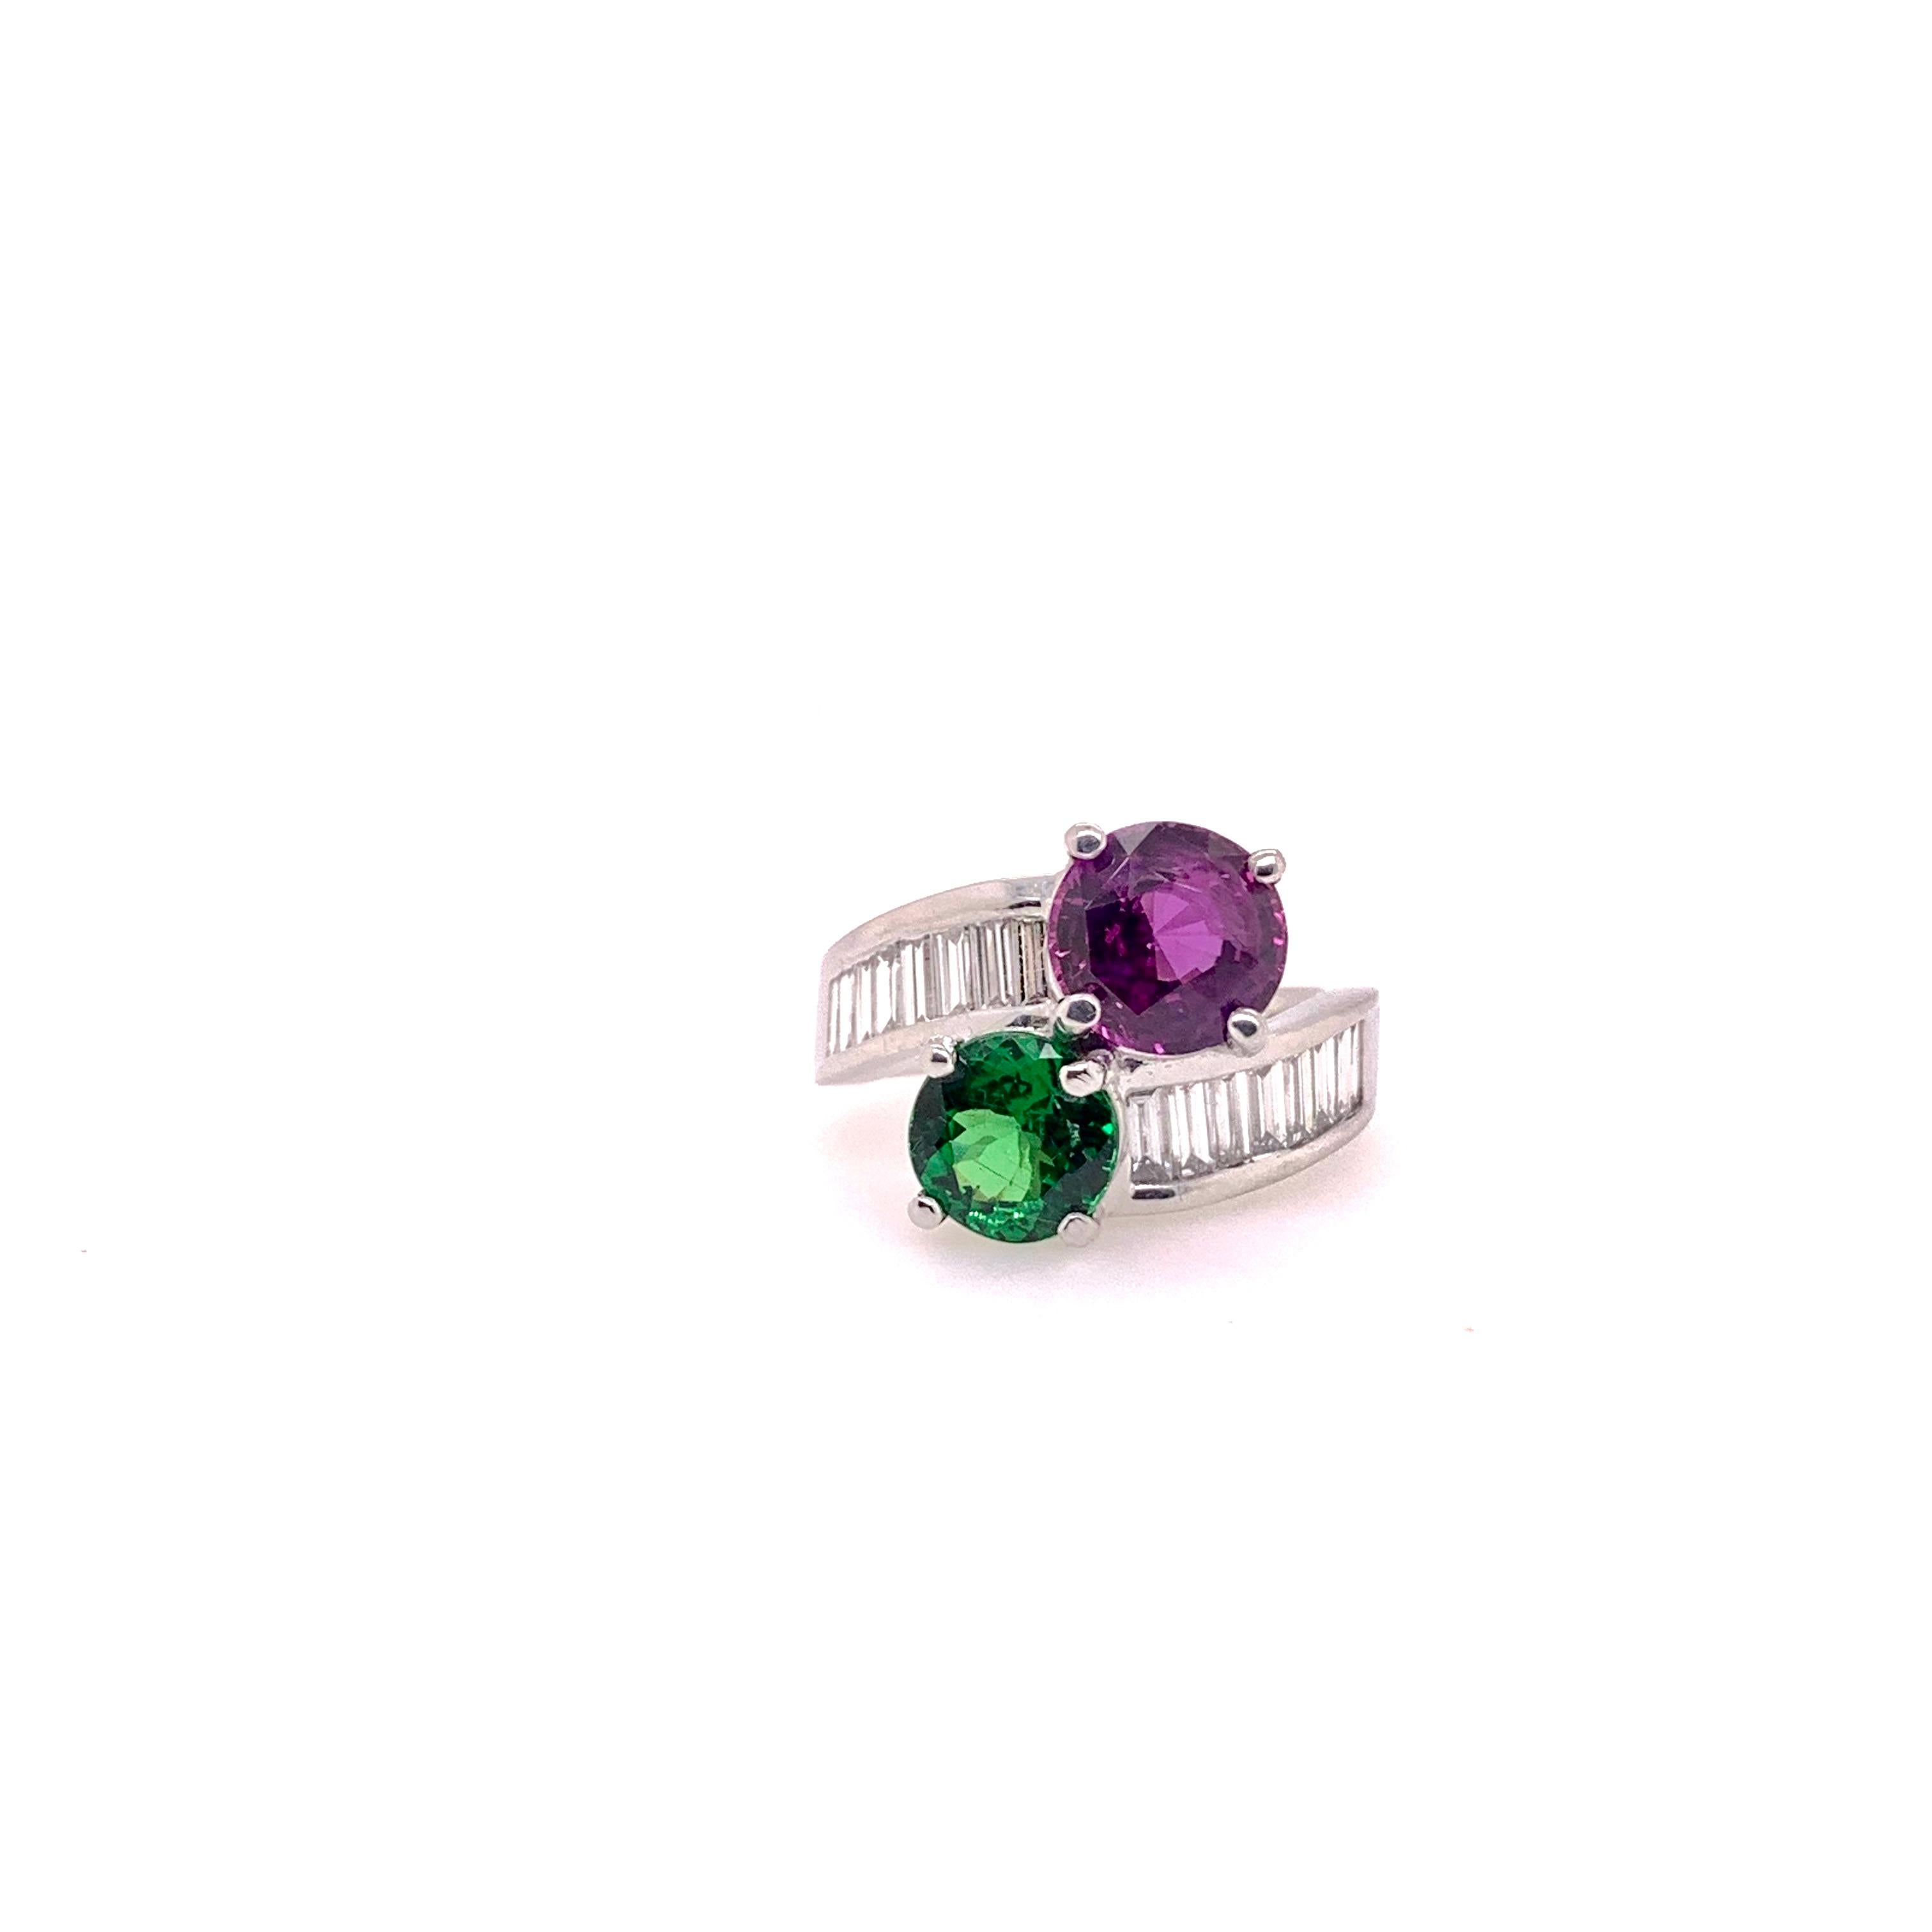 Erstaunlicher Farbstein-Bypass-Ring!   Ein wunderschöner, kellygrüner Tsavorit-Granat wird von einem GIA-zertifizierten lila-rosa Saphir in einer handgefertigten 18-karätigen Weißgoldfassung gegenübergestellt.  Der rundgeschliffene Tsavorit wiegt